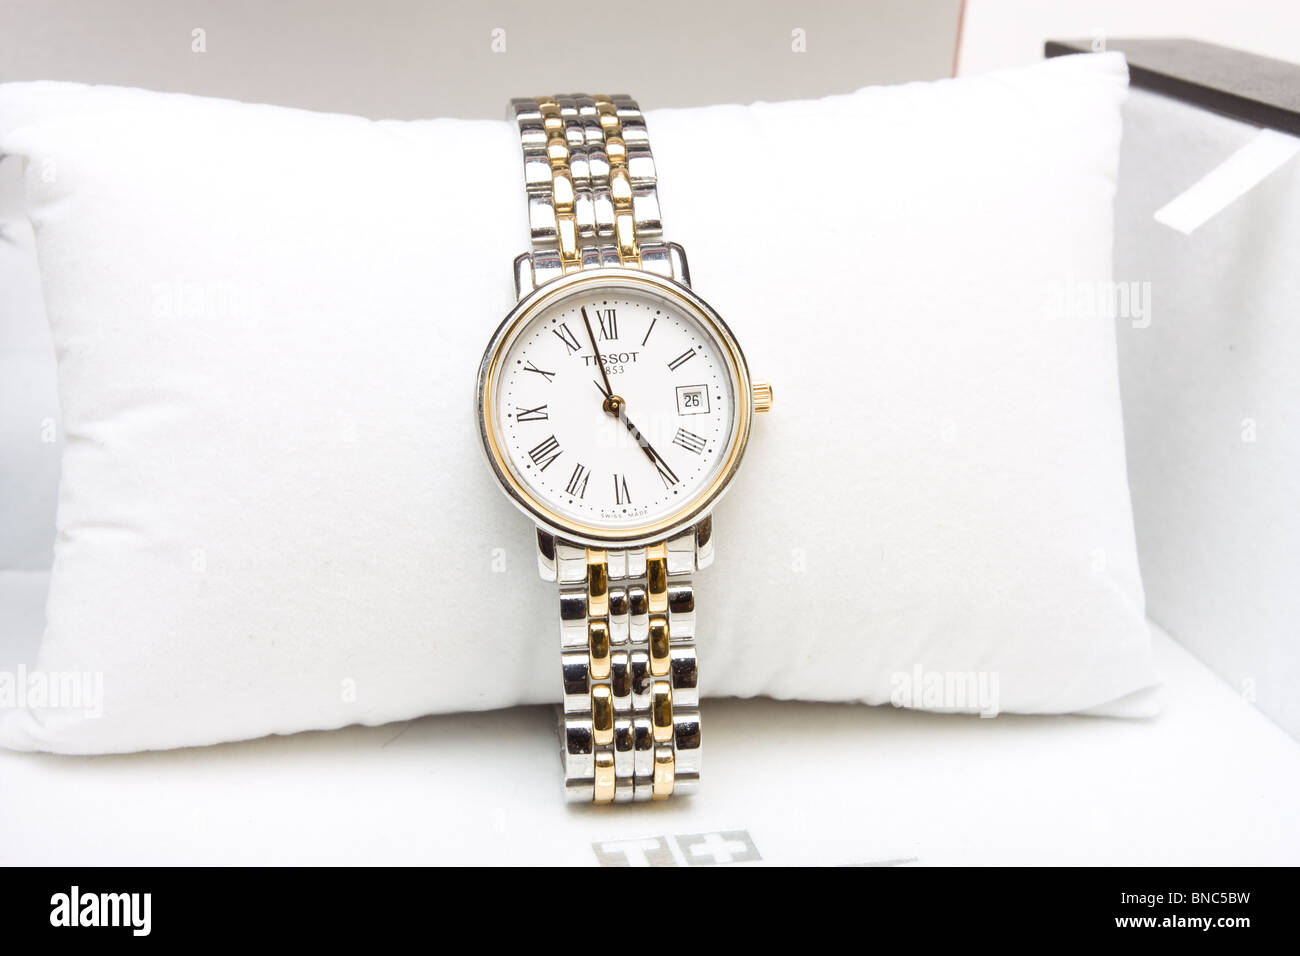 Silber und gold Tissot-Swiss made Damen Armbanduhr in Verkauf Verpackung  Stockfotografie - Alamy